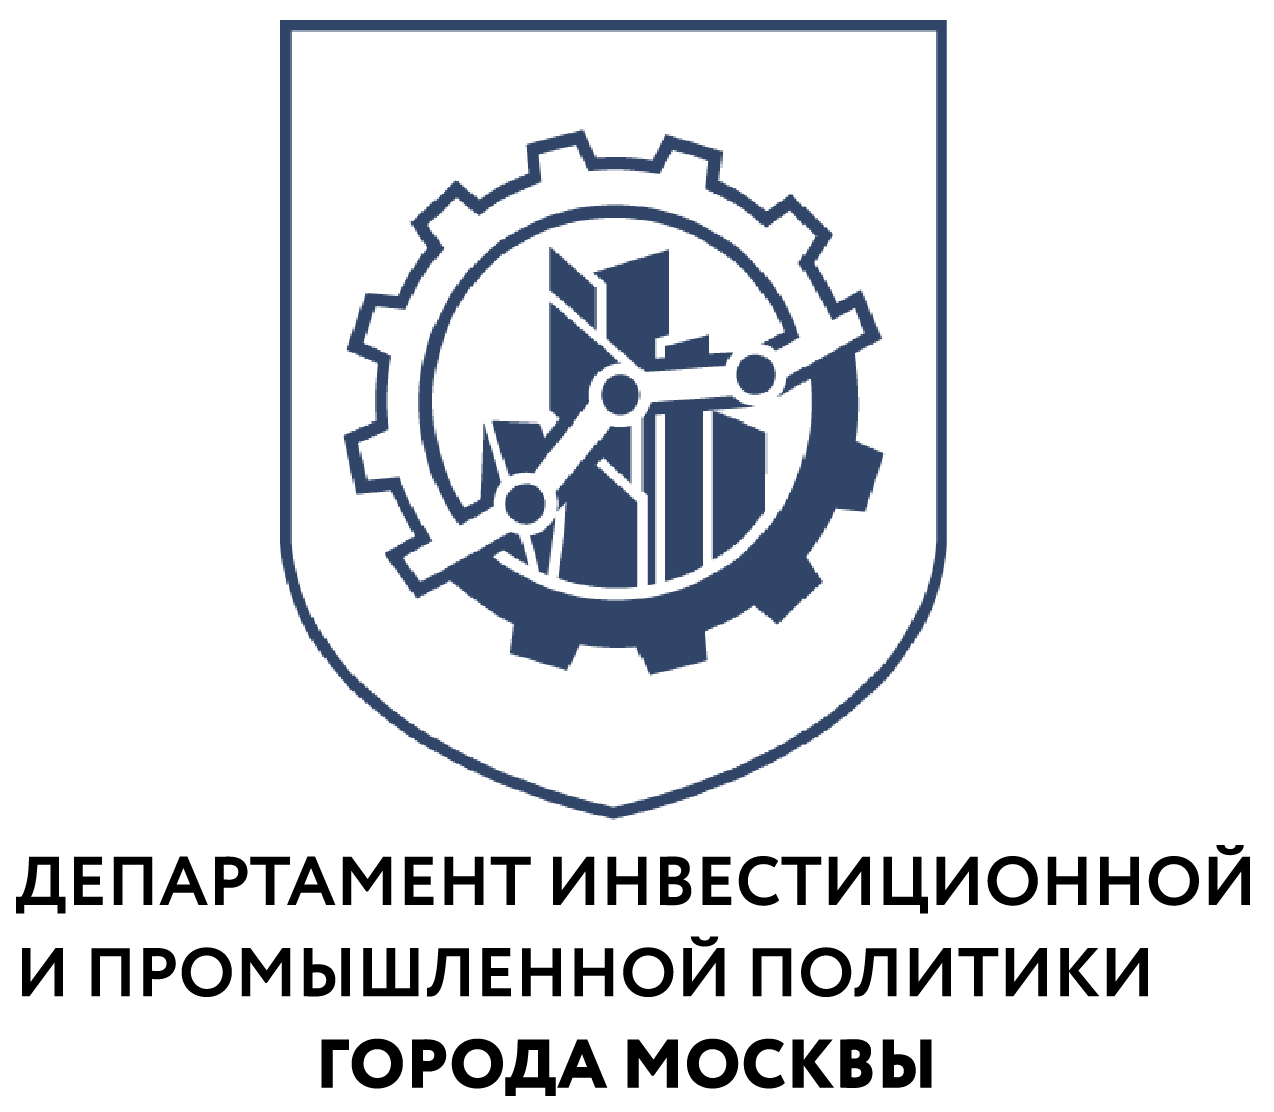 Производство, программирование и эксплуатация: «Московская техническая школа» запустила пять курсов по беспилотному транспорту - фото 1